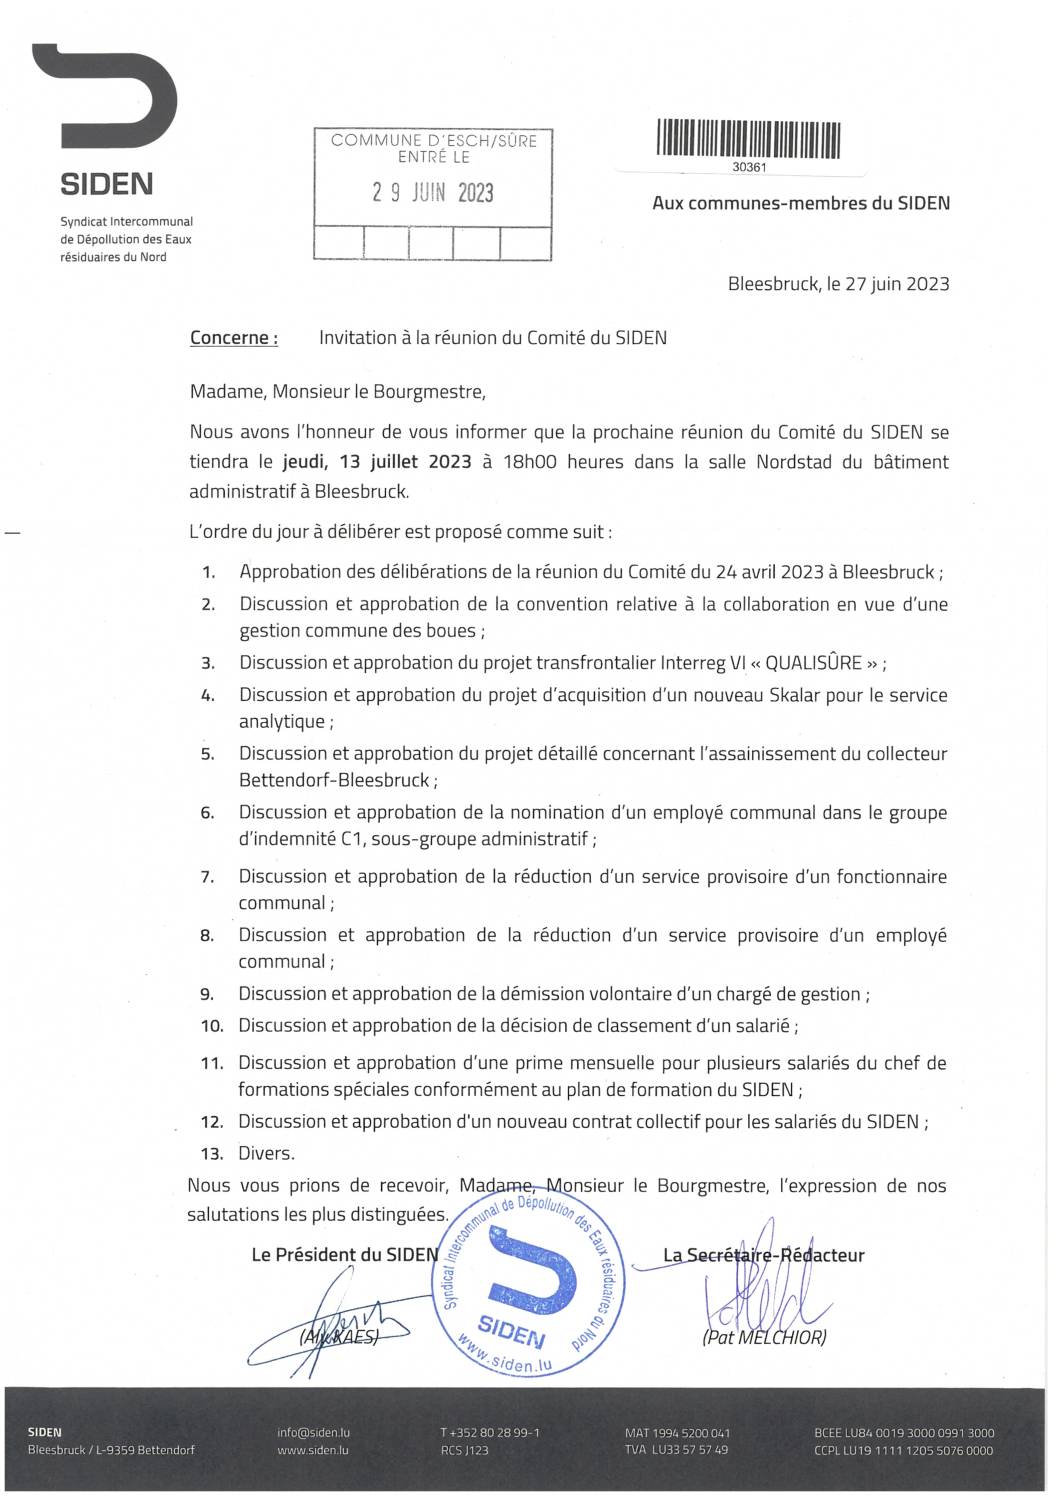 2023.06.30_Convocation comité SIDEN - Réunion du 13.07.2023